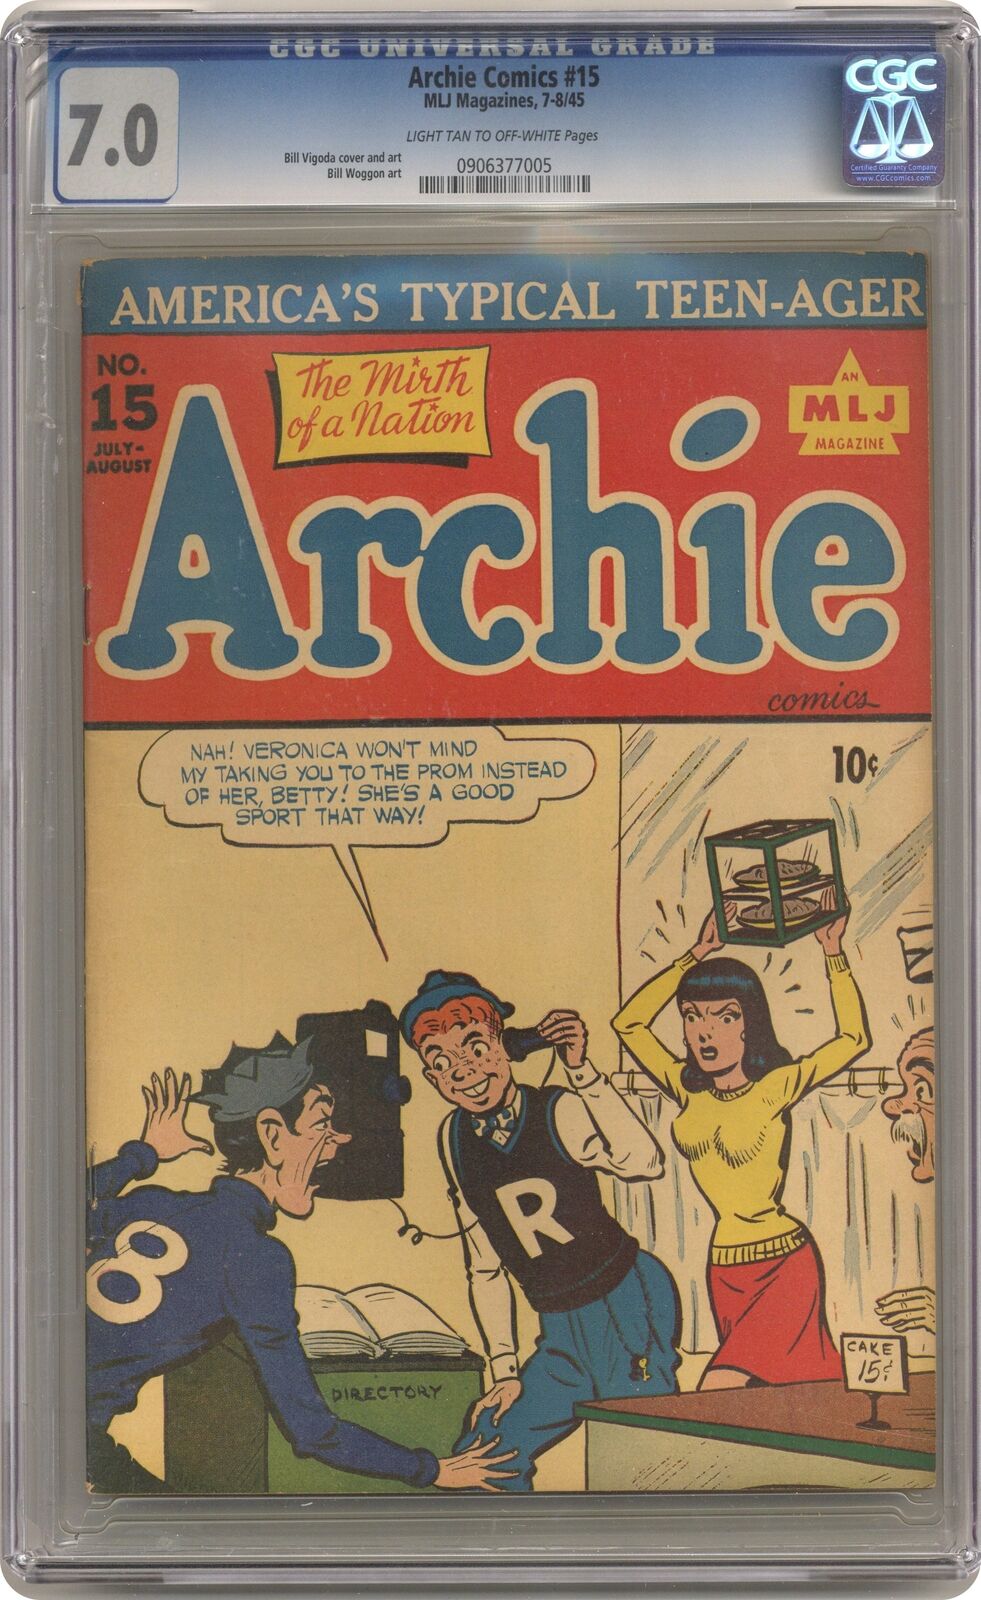 Archie #15 CGC 7.0 1945 0906377005